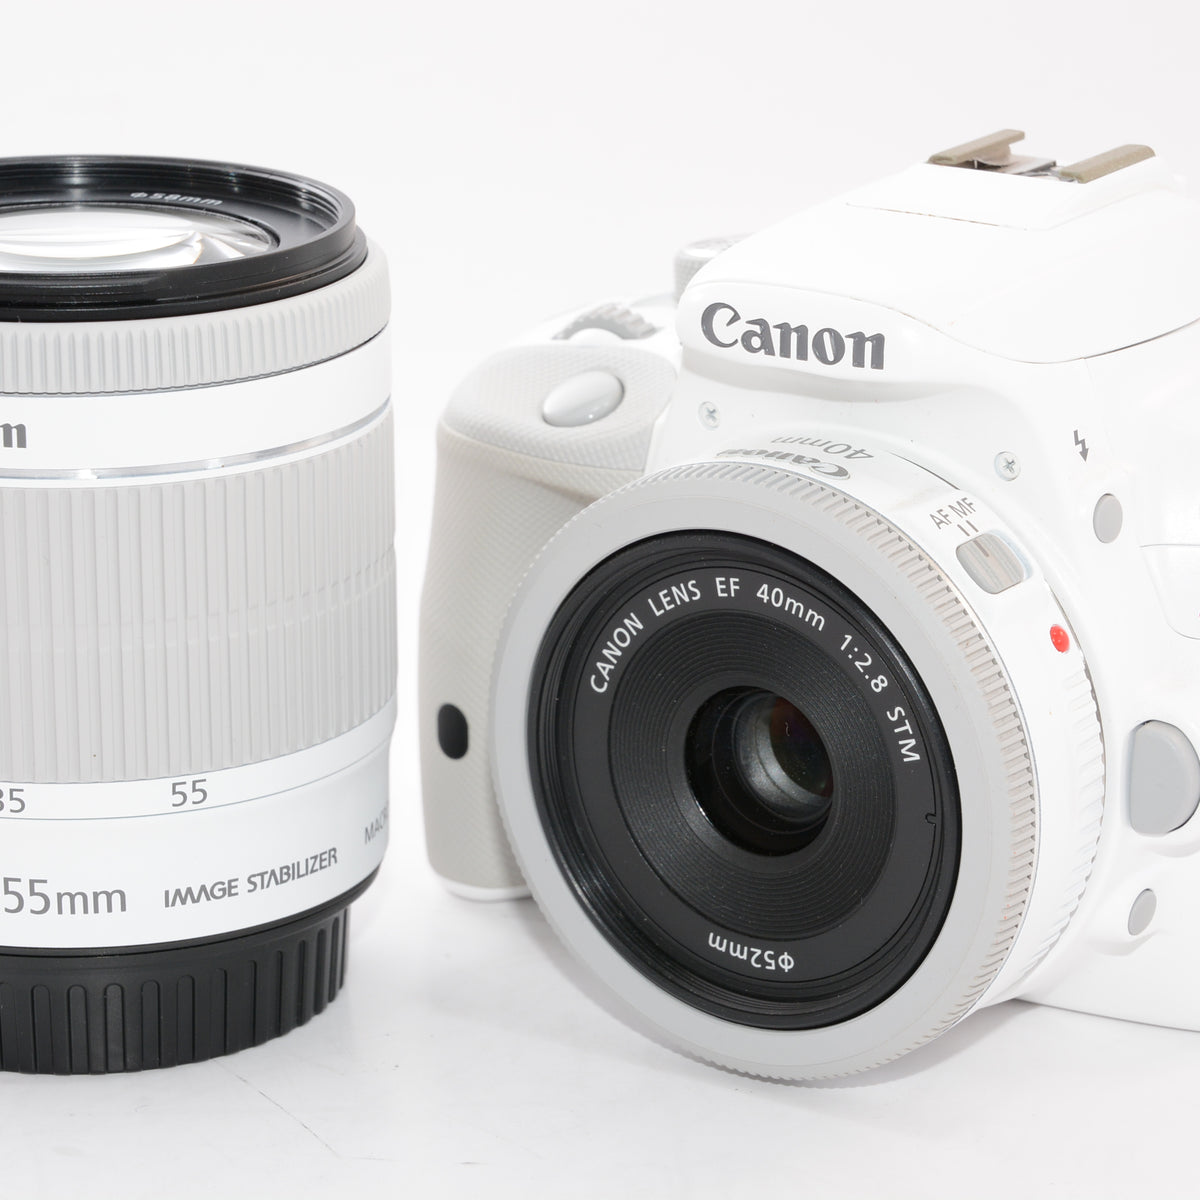 Canon EOS KISS X7 Wレンズキット ホワイト - デジタルカメラ